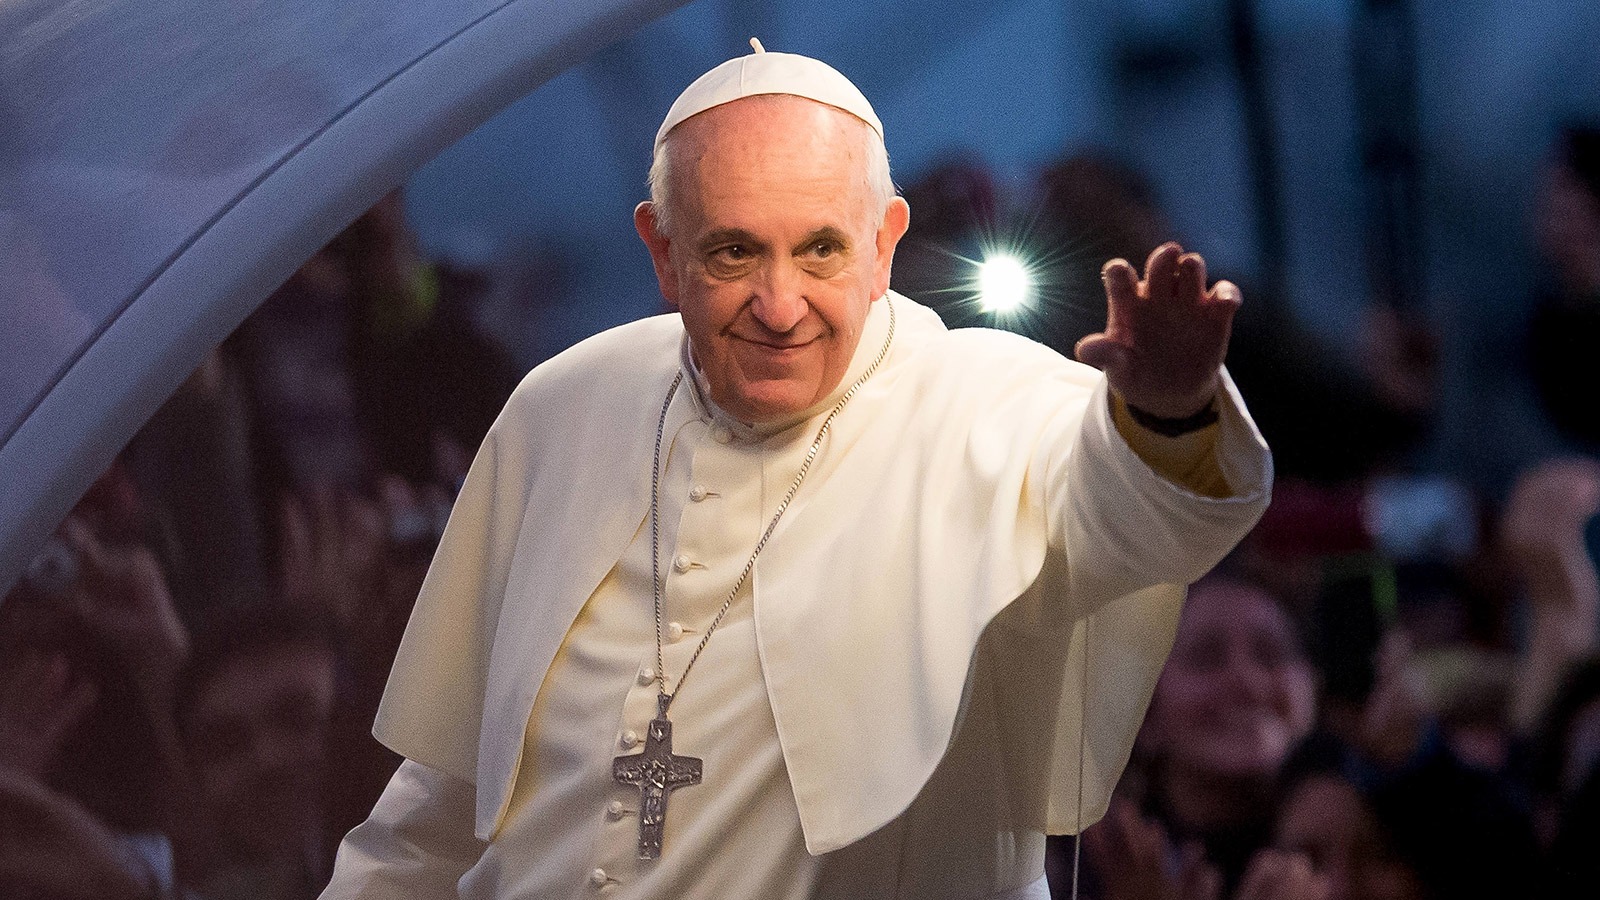 Папа римский ответил. Франциск (папа Римский). Понтифик папа Римский Франциск. Франциск (папа Римский) фото. Франциск 1 папа Римский.